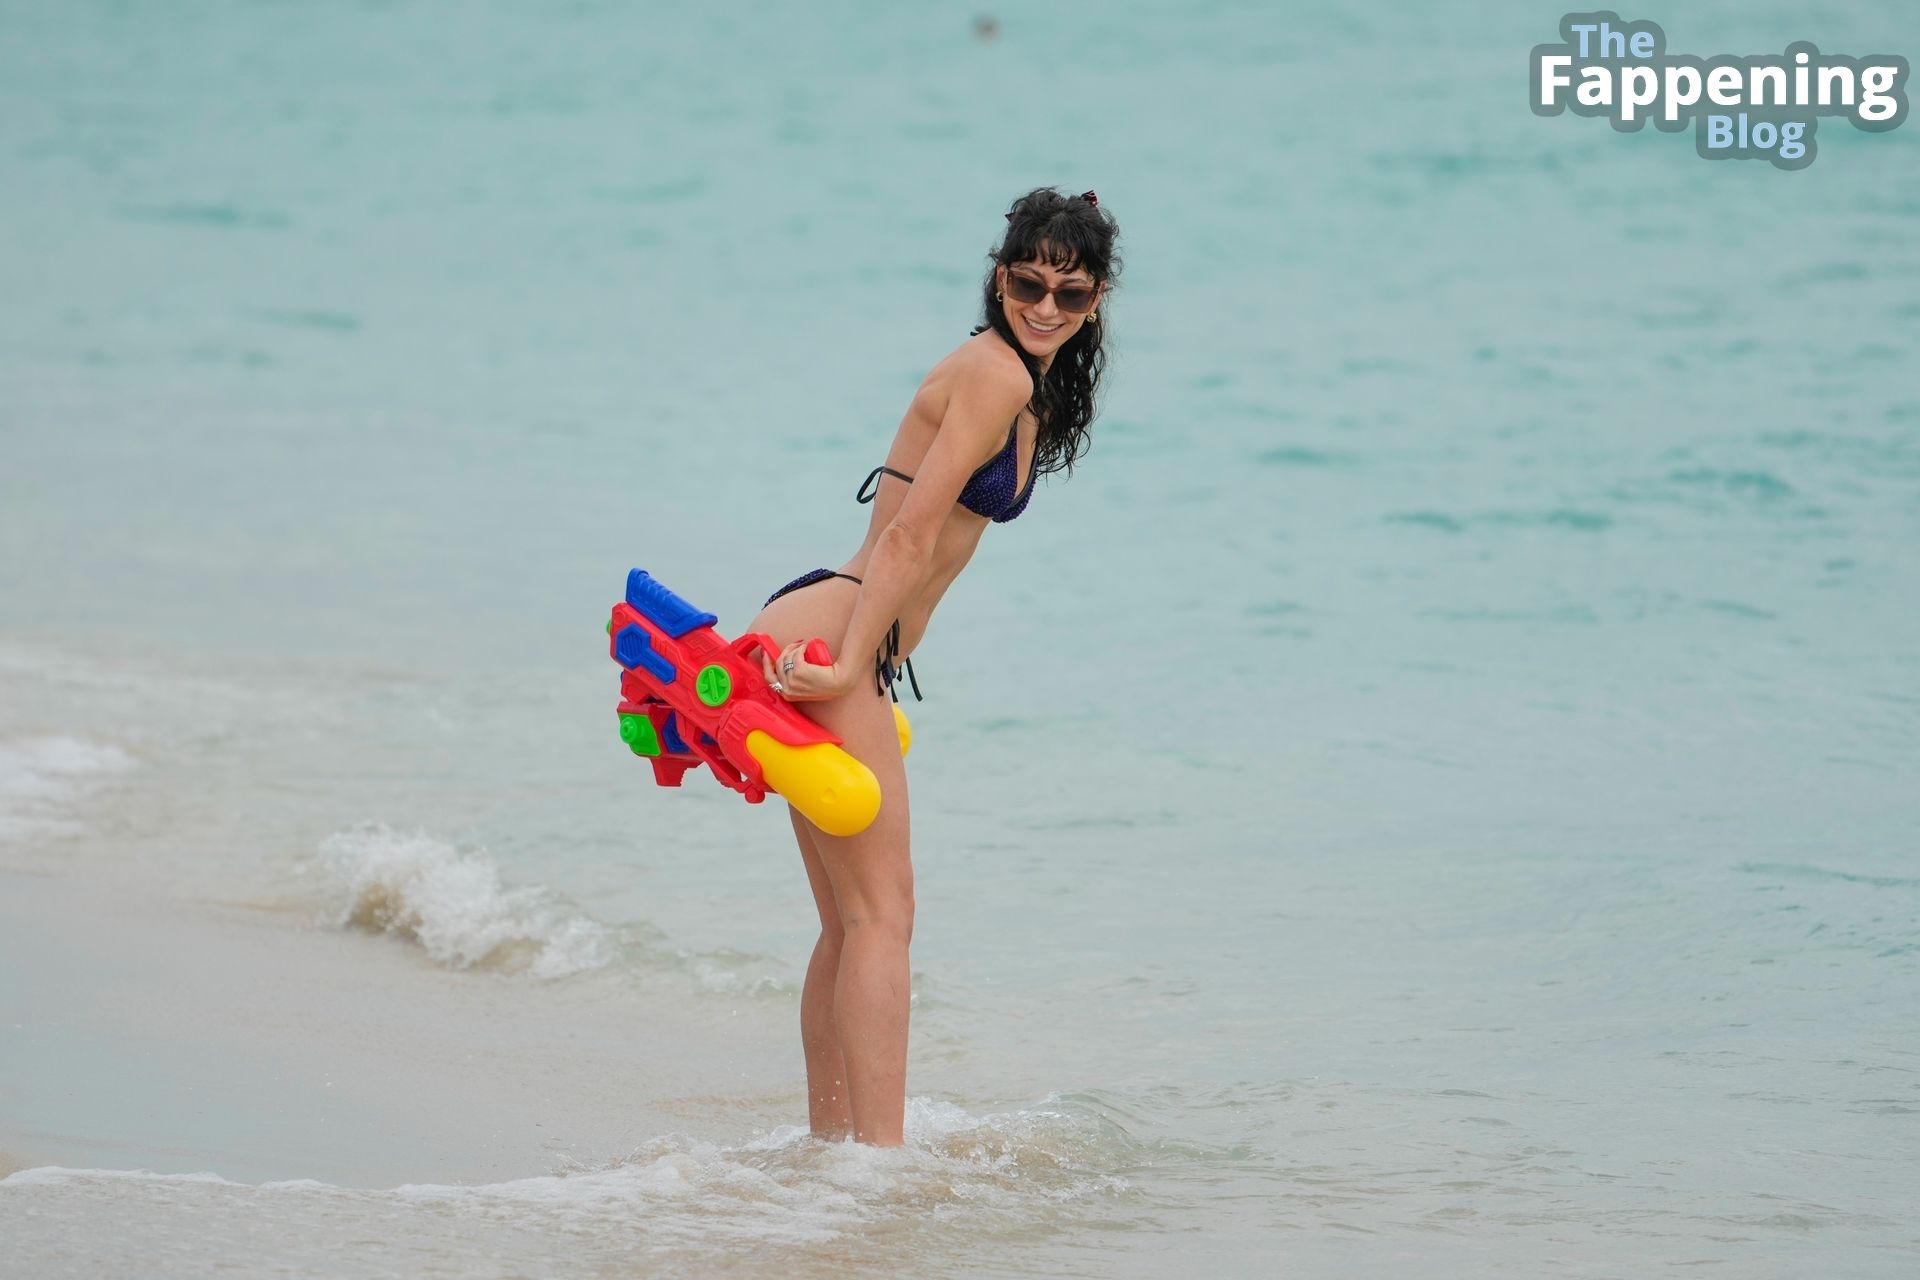 Lexy Panterra Enjoys a Beach Day in Miami (32 Photos)